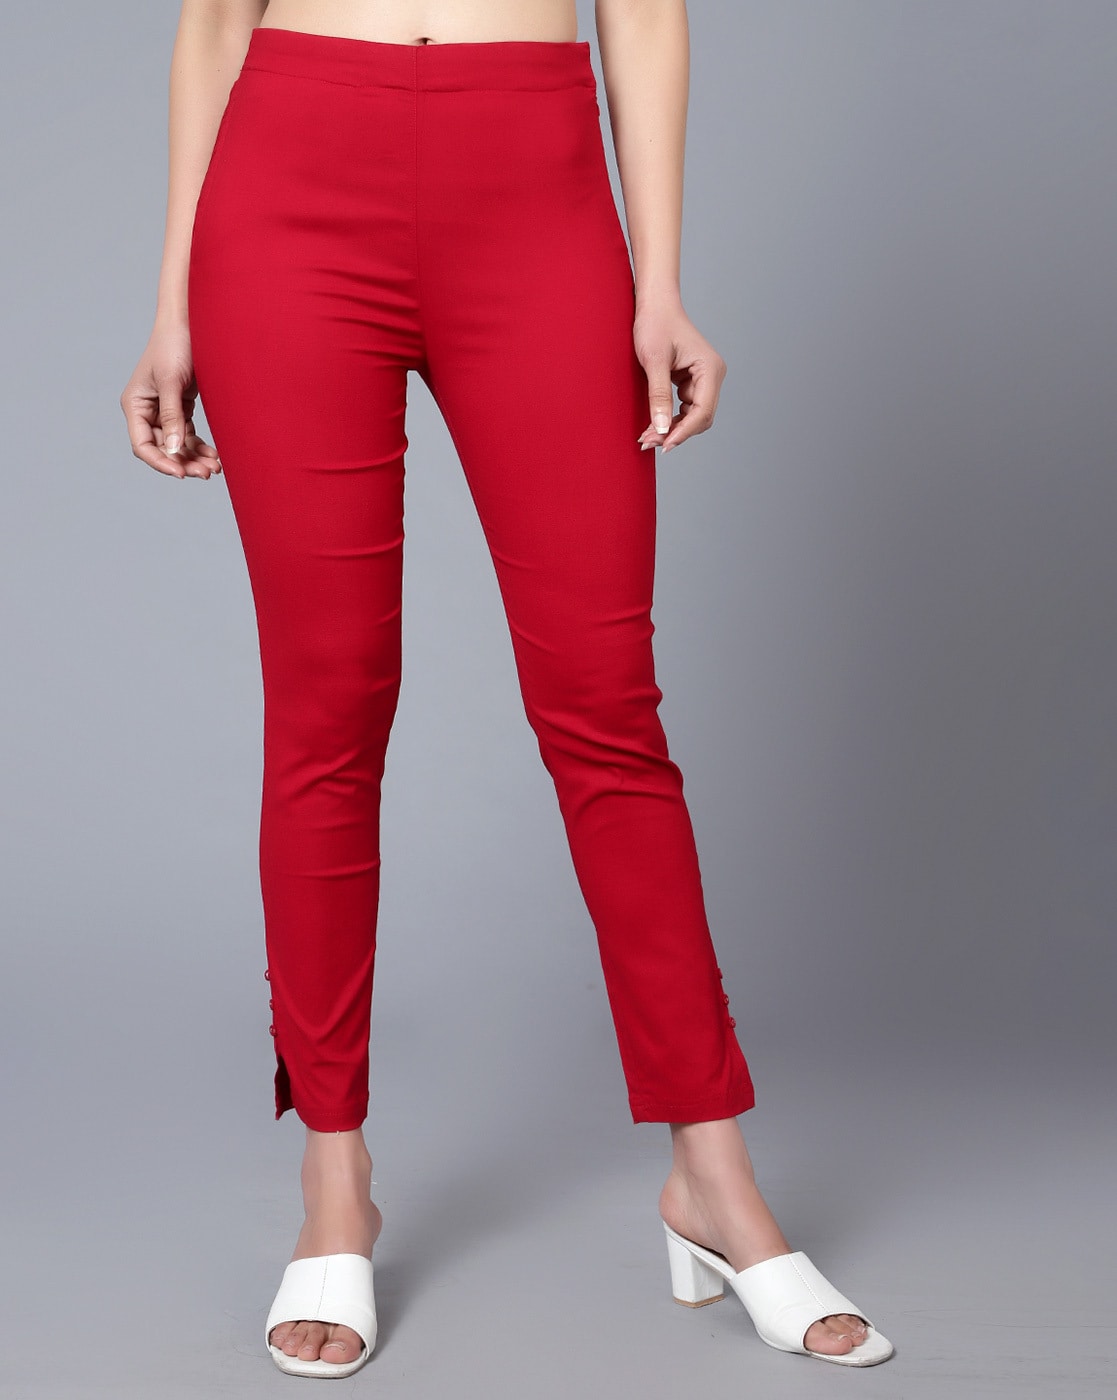 Burberry Ladies Pants Slim Bright Red Tartan Pants | eBay